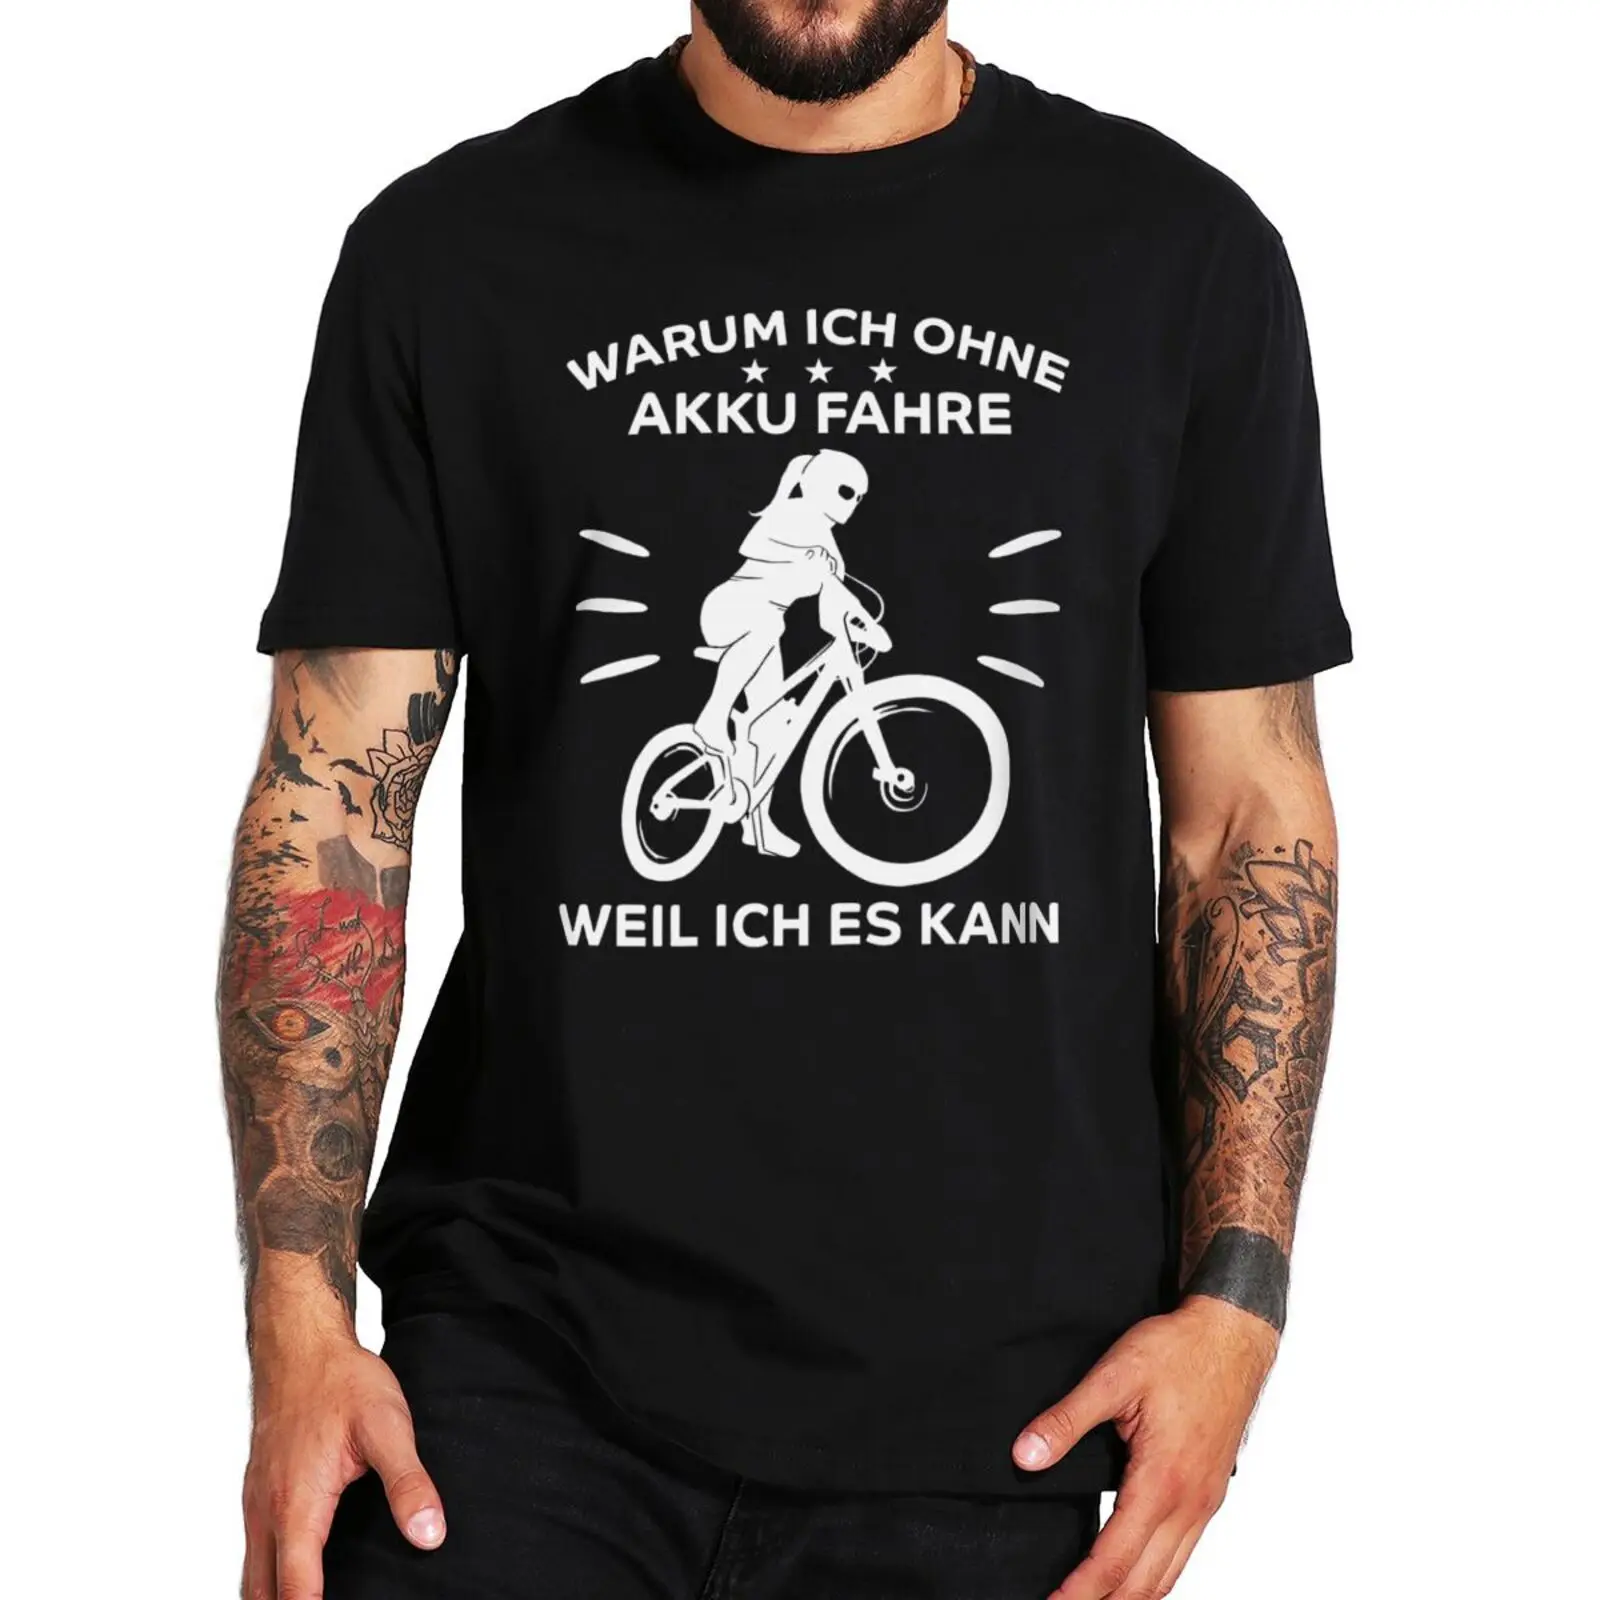 

Забавная футболка для езды на велосипеде с немецким текстом Ohne Ich Fahre E-Warum почему я езжу без аккумулятора, потому что могу